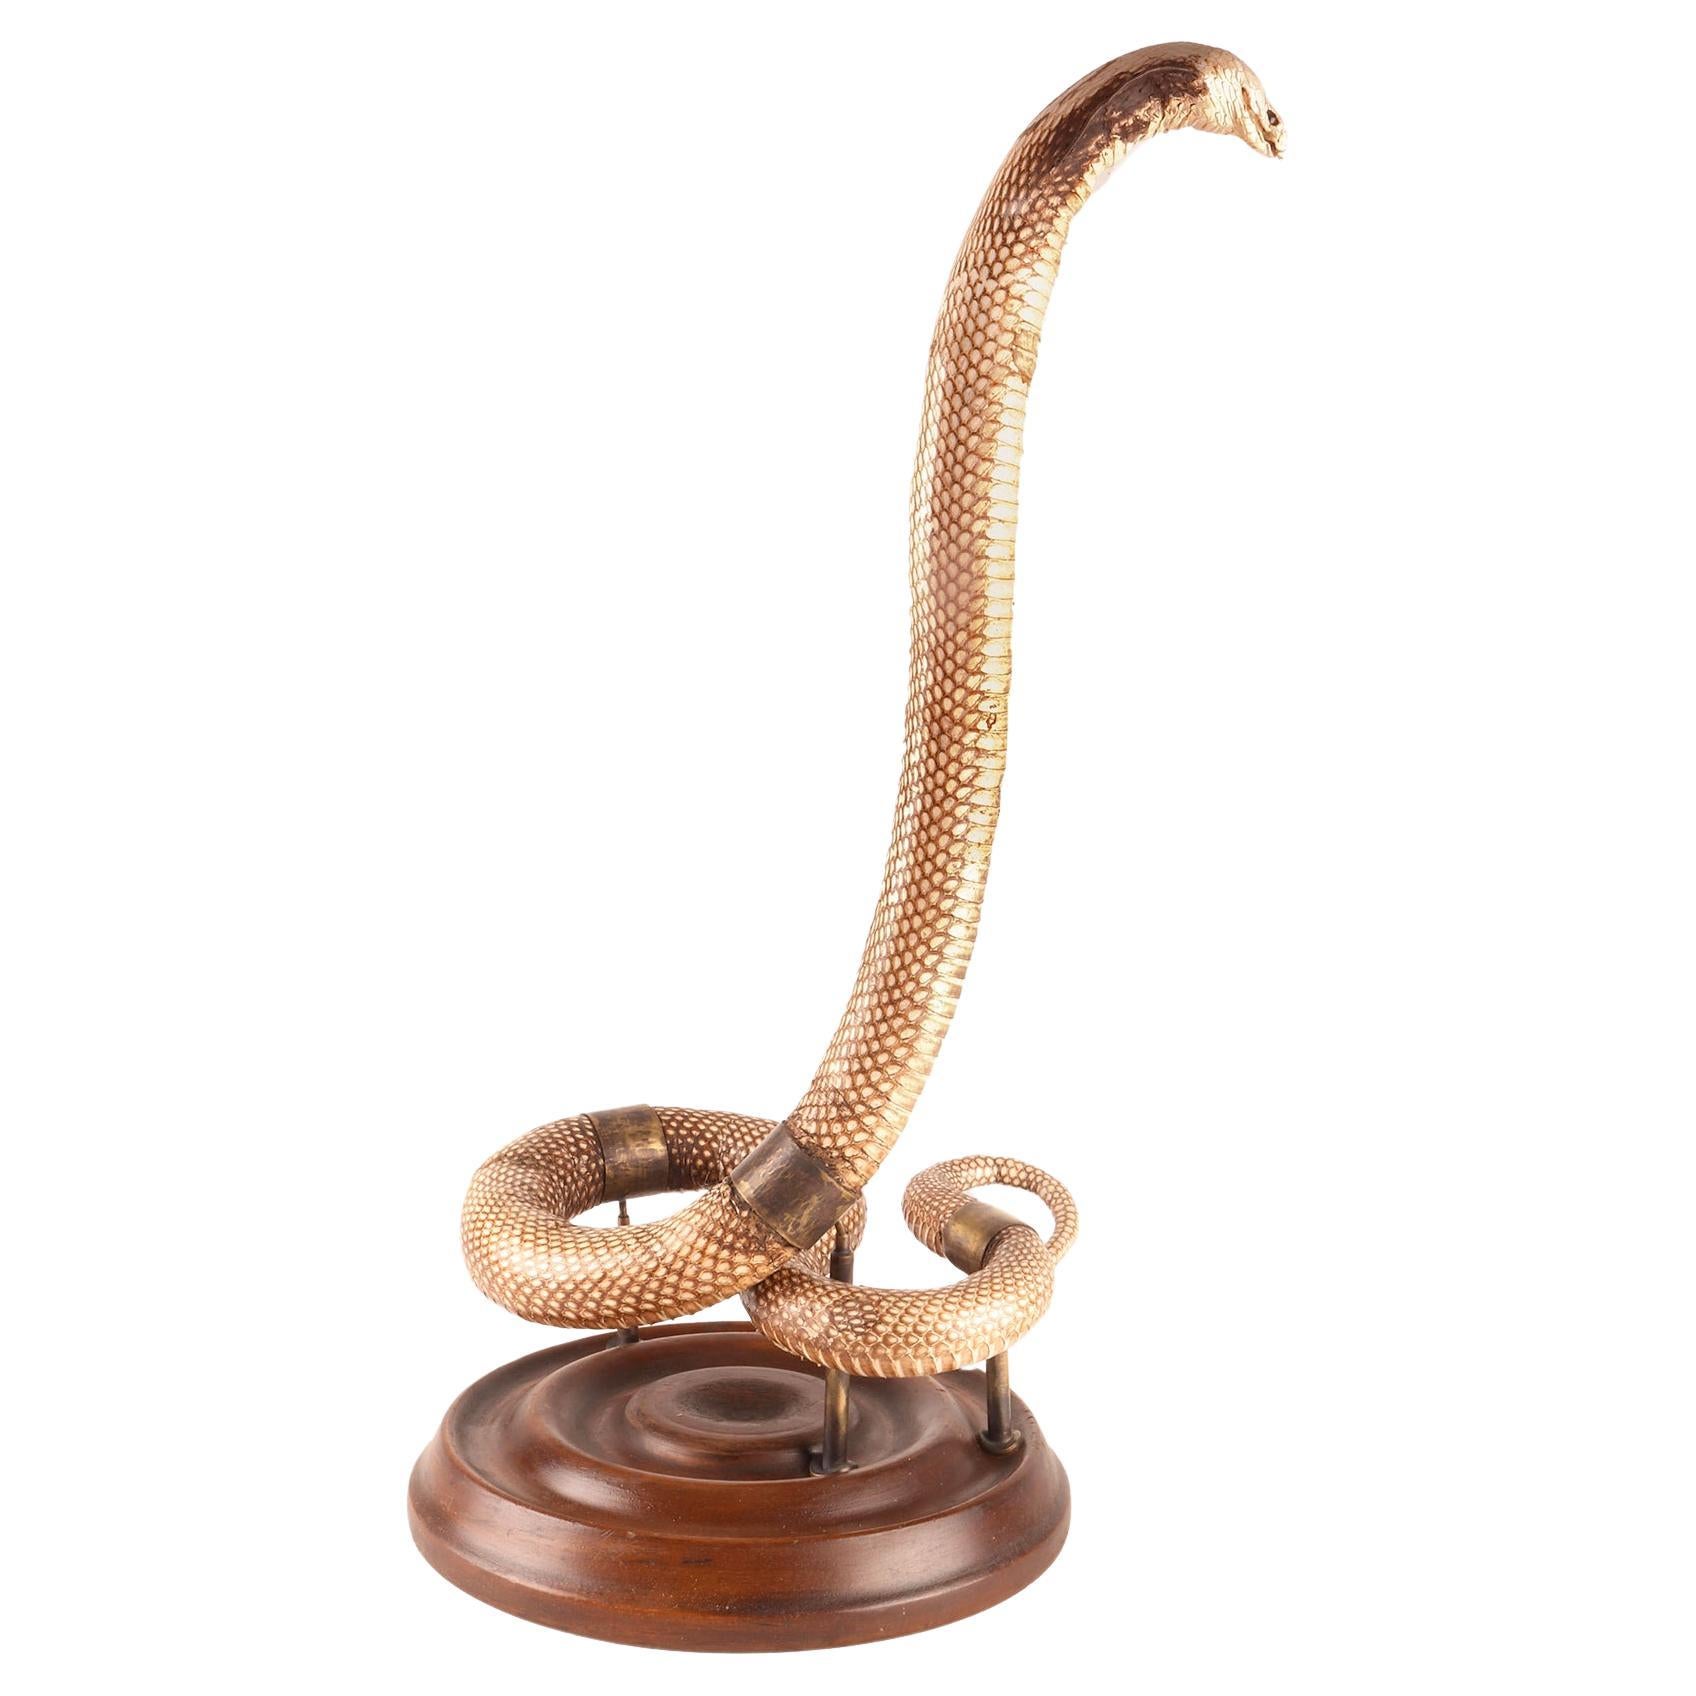 Ein Exemplar der Hemachatus-Saphirhaut-Slangen taxidermie, Italien 1890.